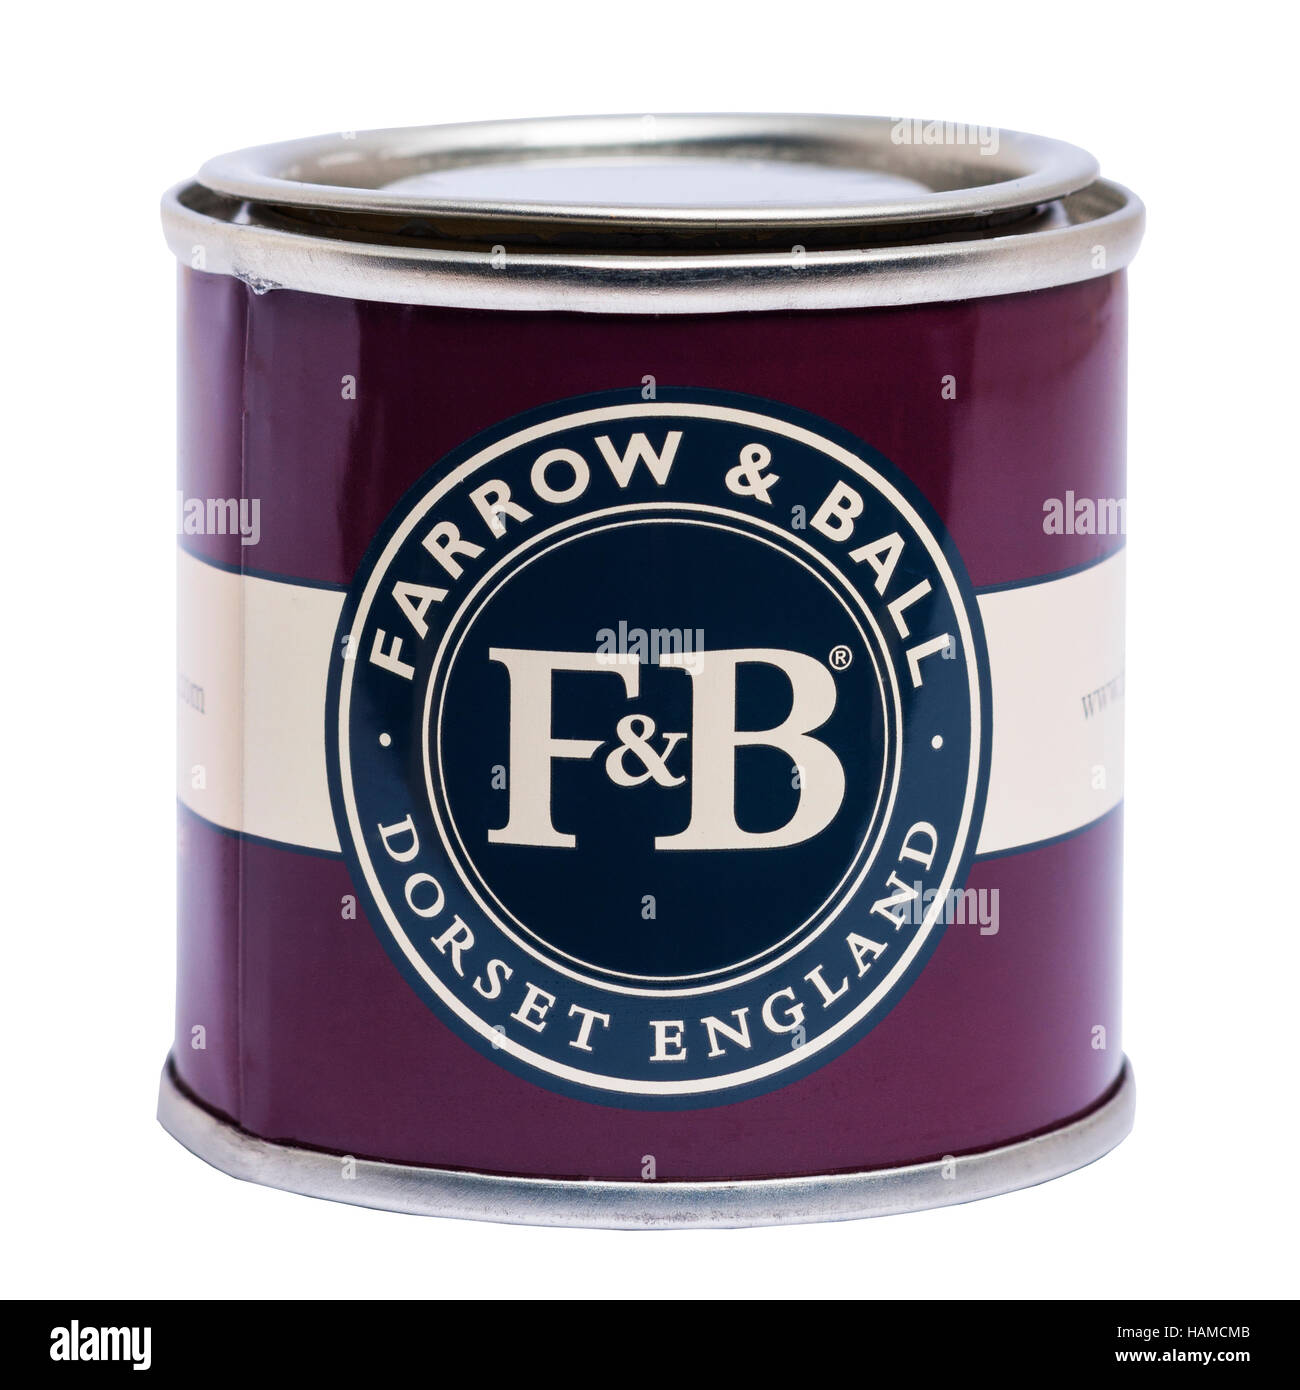 Una lattina di Farrow & Ball vernice su uno sfondo bianco Foto Stock